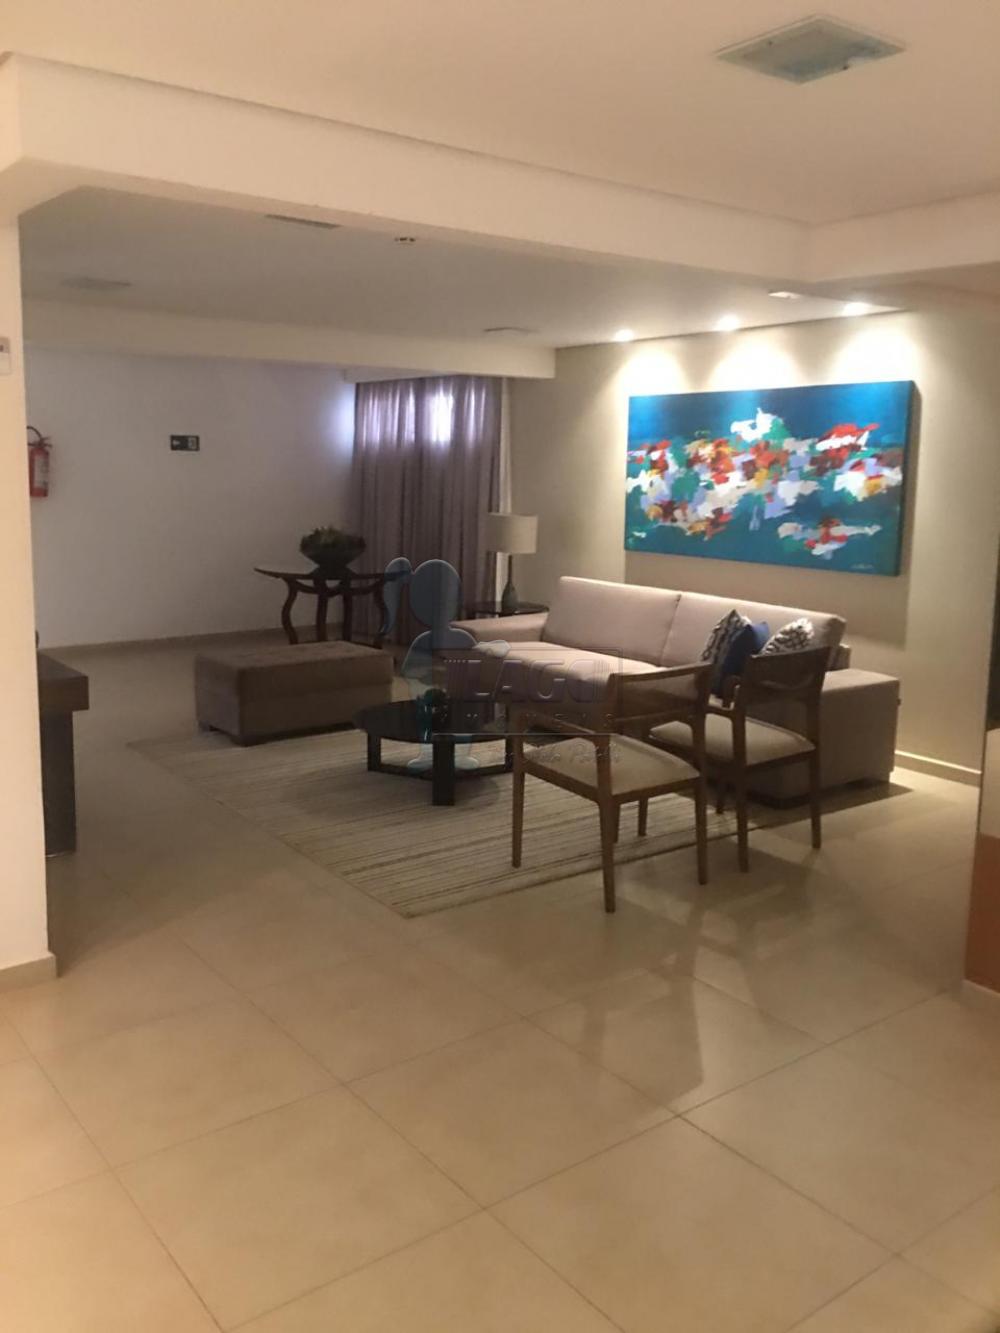 Alugar Apartamentos / Padrão em Ribeirão Preto R$ 4.700,00 - Foto 14